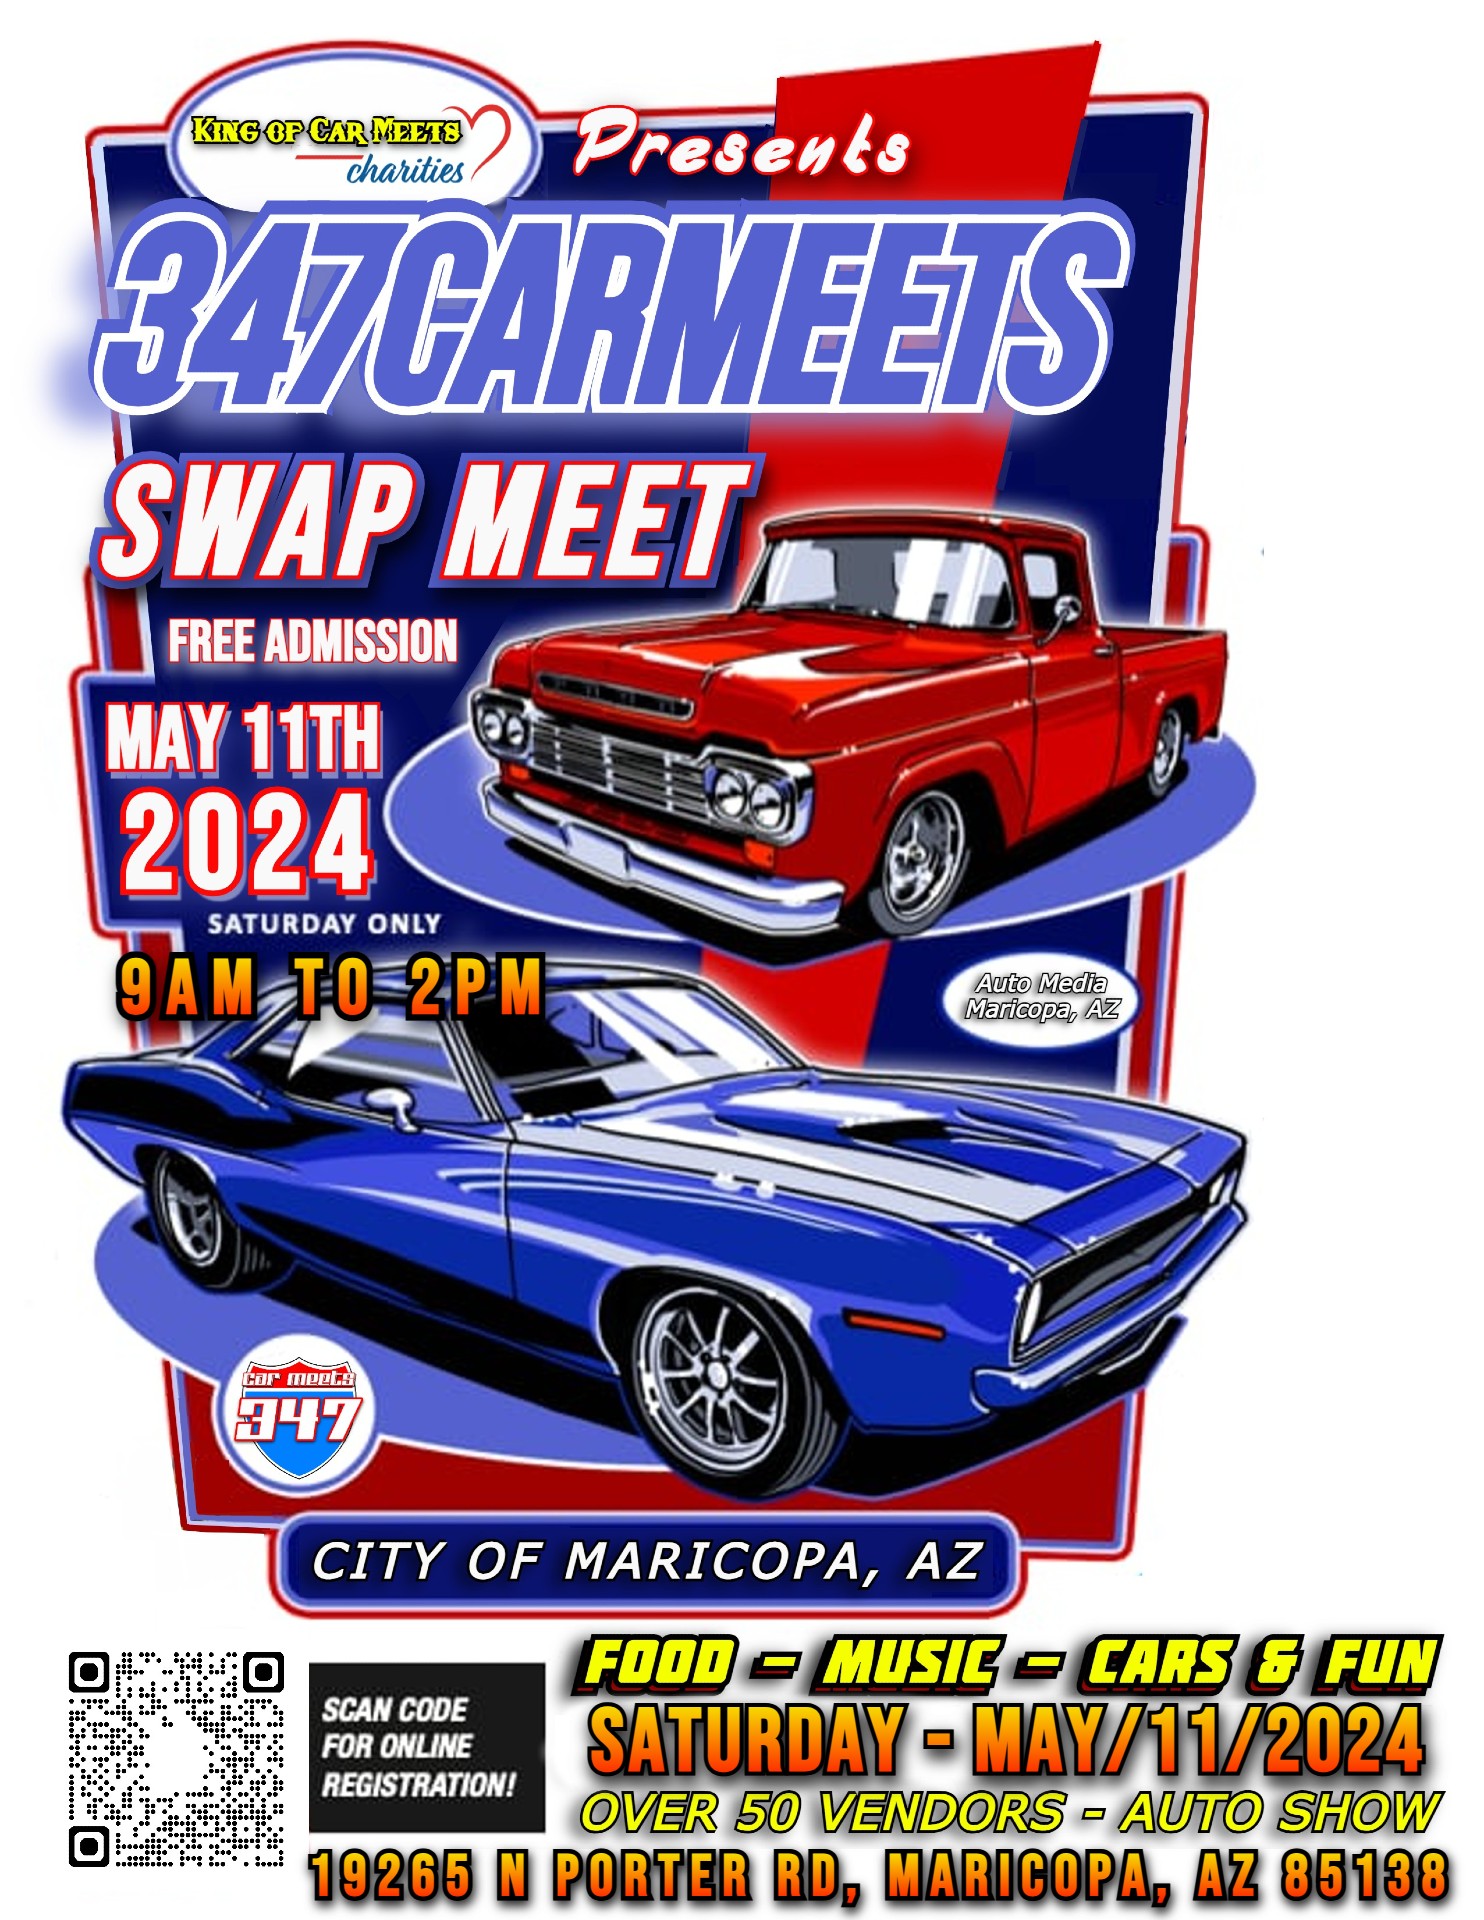 347 Car Meets Auto Show & Swap Meet